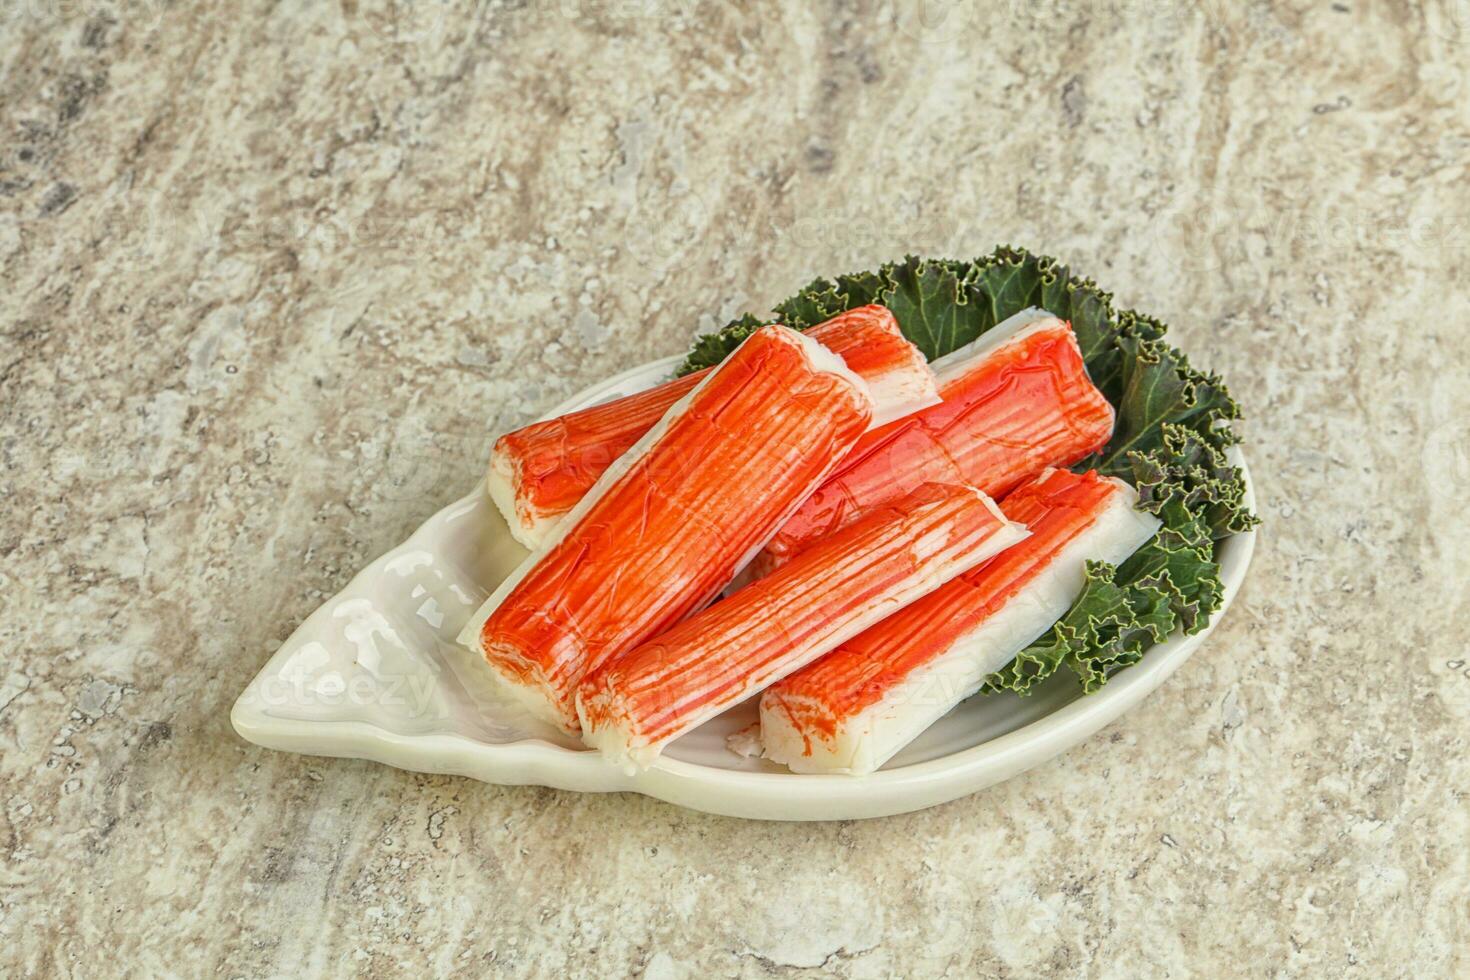 Crab stick fish surimi snack photo